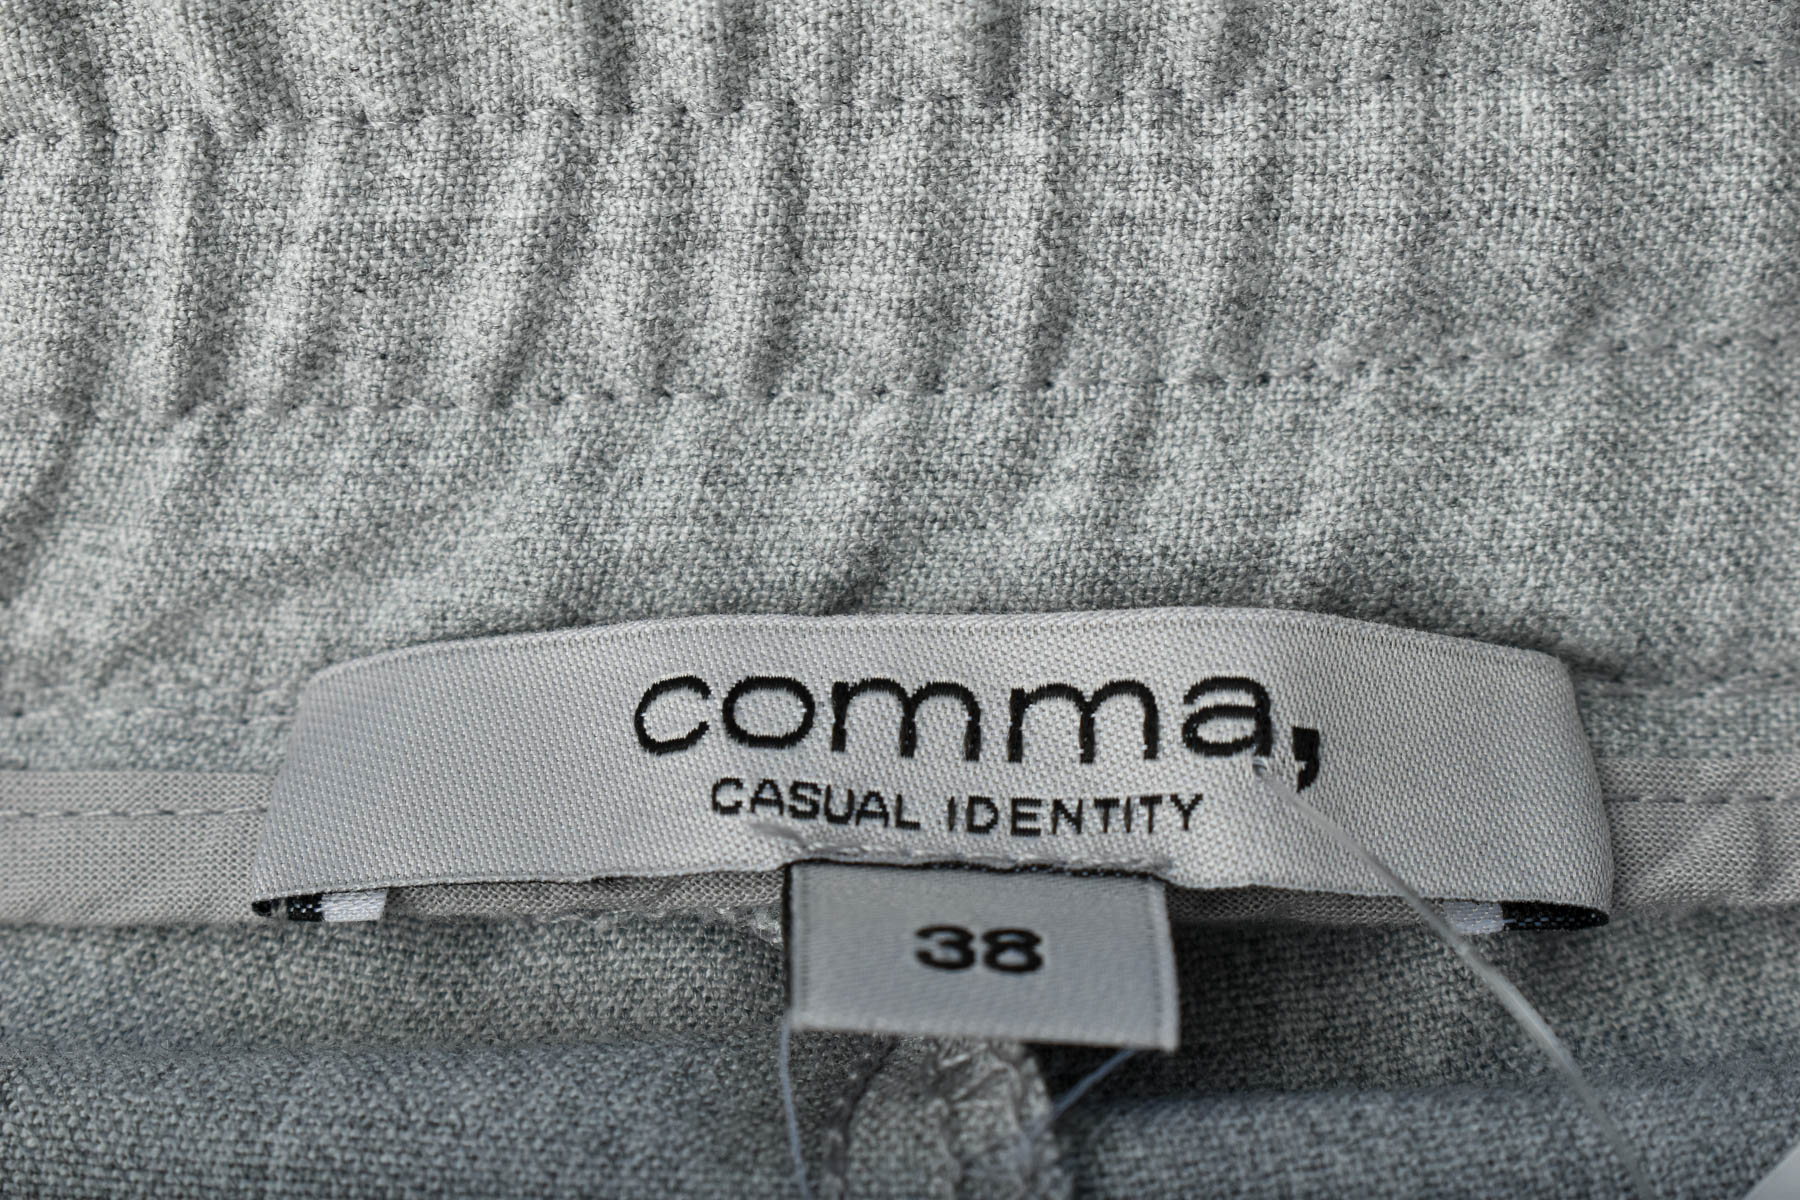 Γυναικεία παντελόνια - Comma, - 2